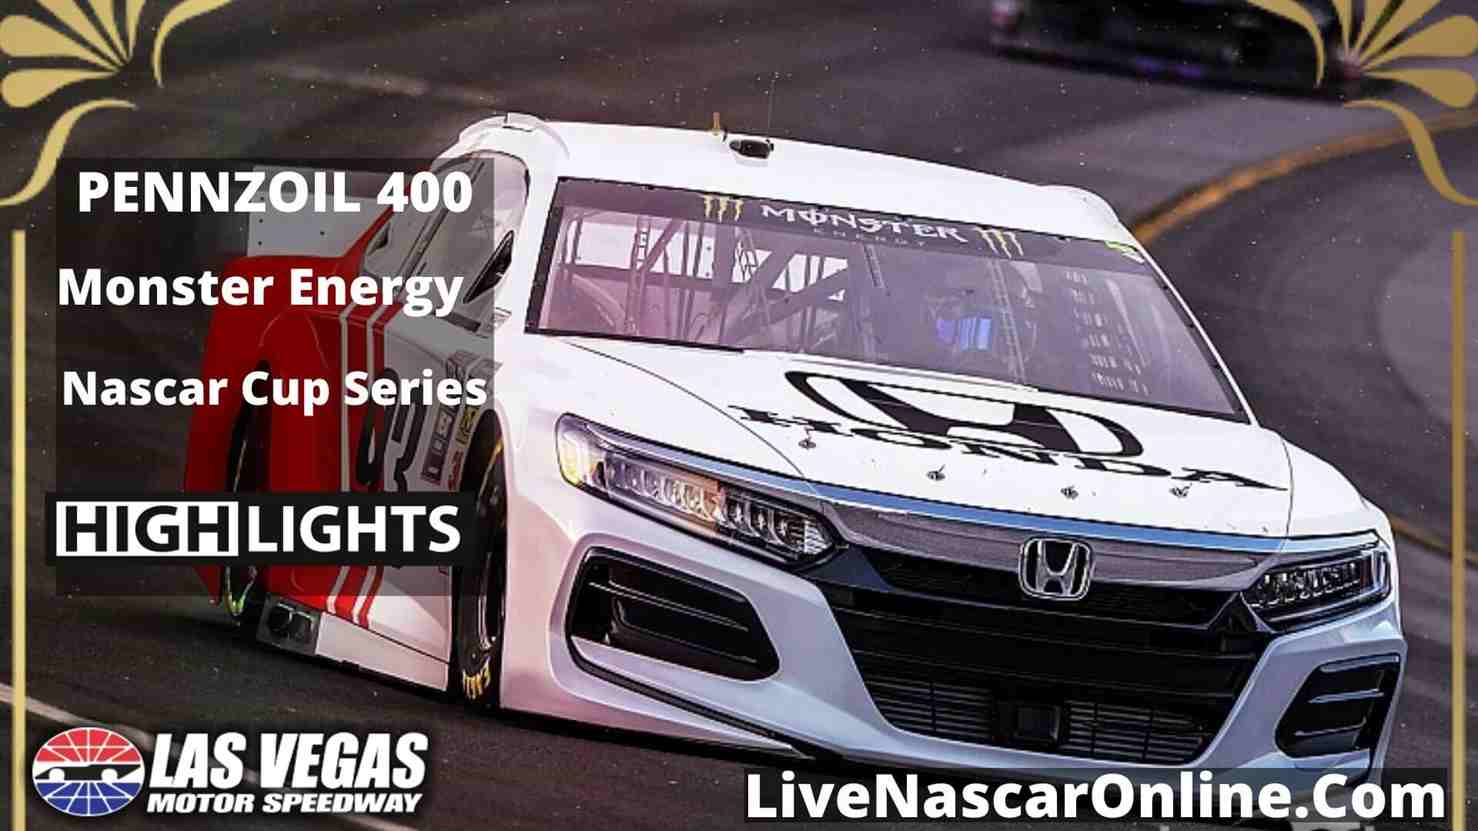 NASCAR CUP PENNZOIL 400 Highlights 2020